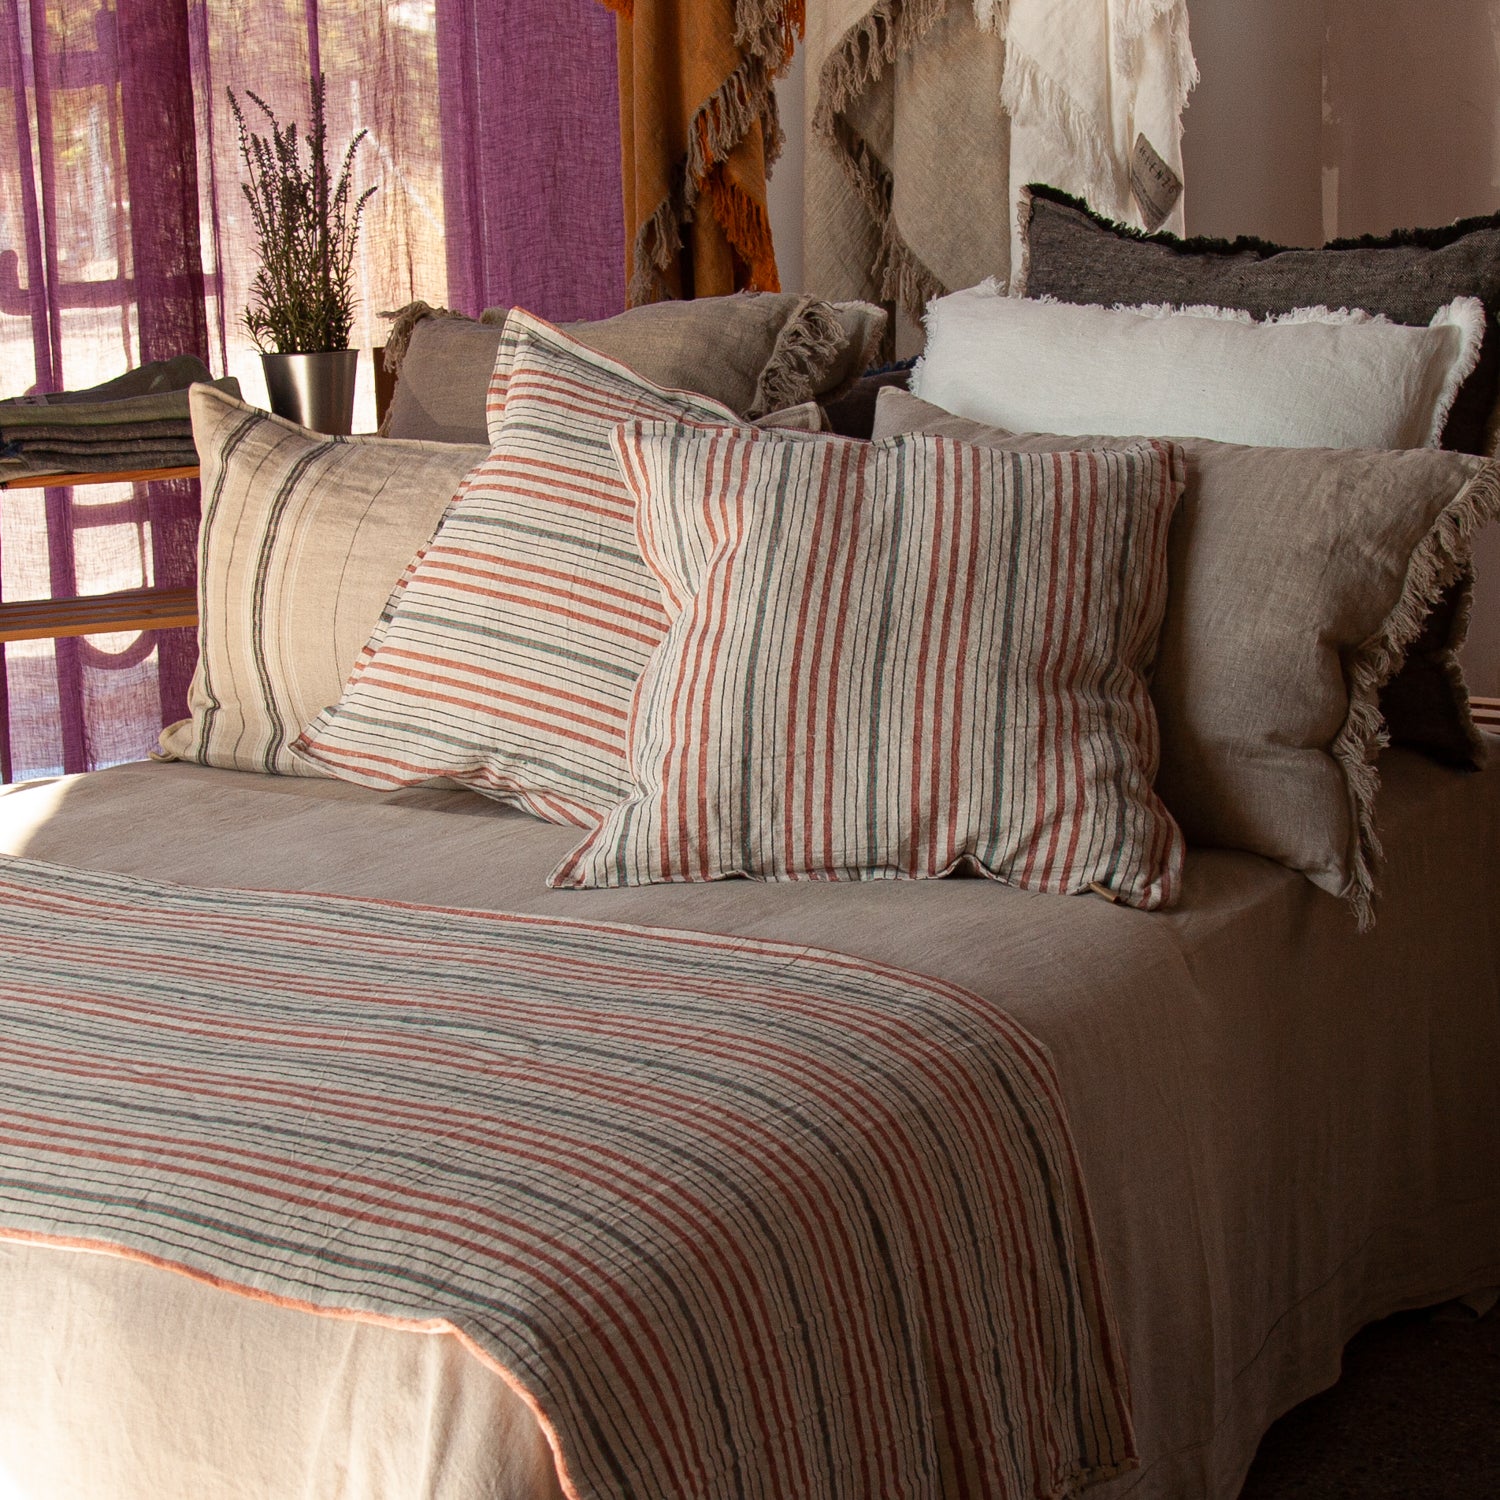 Juego de cojines en tonos naturales con pie de cama de lino rayado y sábana de lino natural.